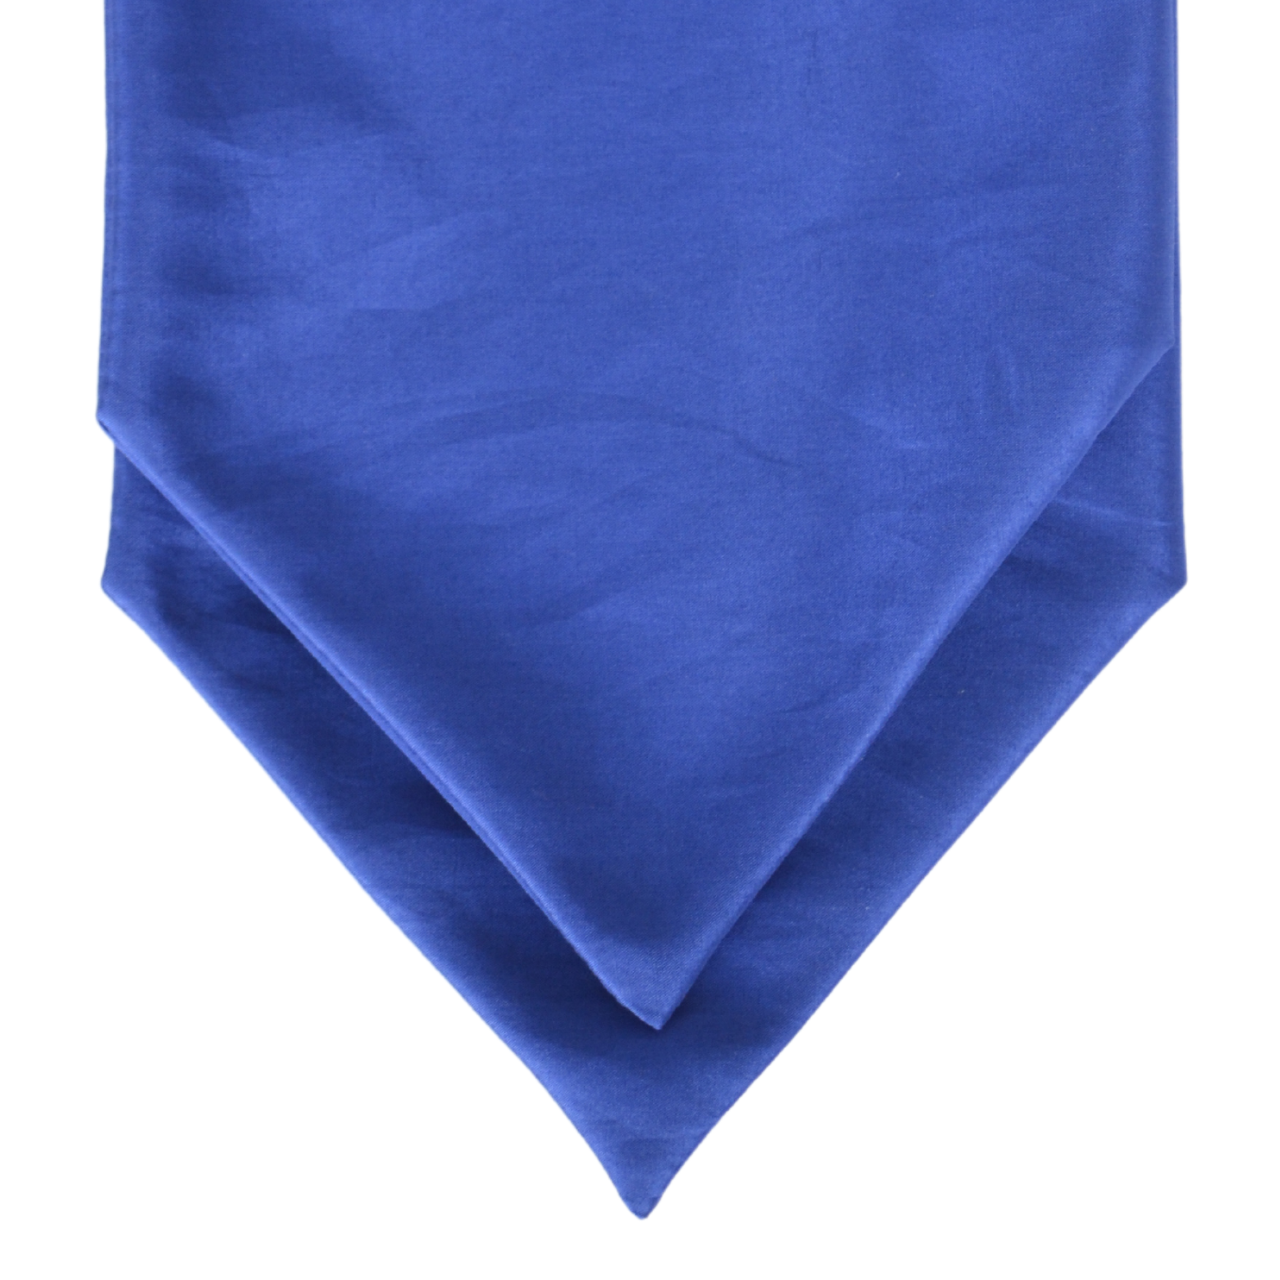 Prima Cravatta klassikaline pikk Soft sarja kuuluv rukkilillesinisest täissiidist meeste klassikaline kravatt Michael Felgate